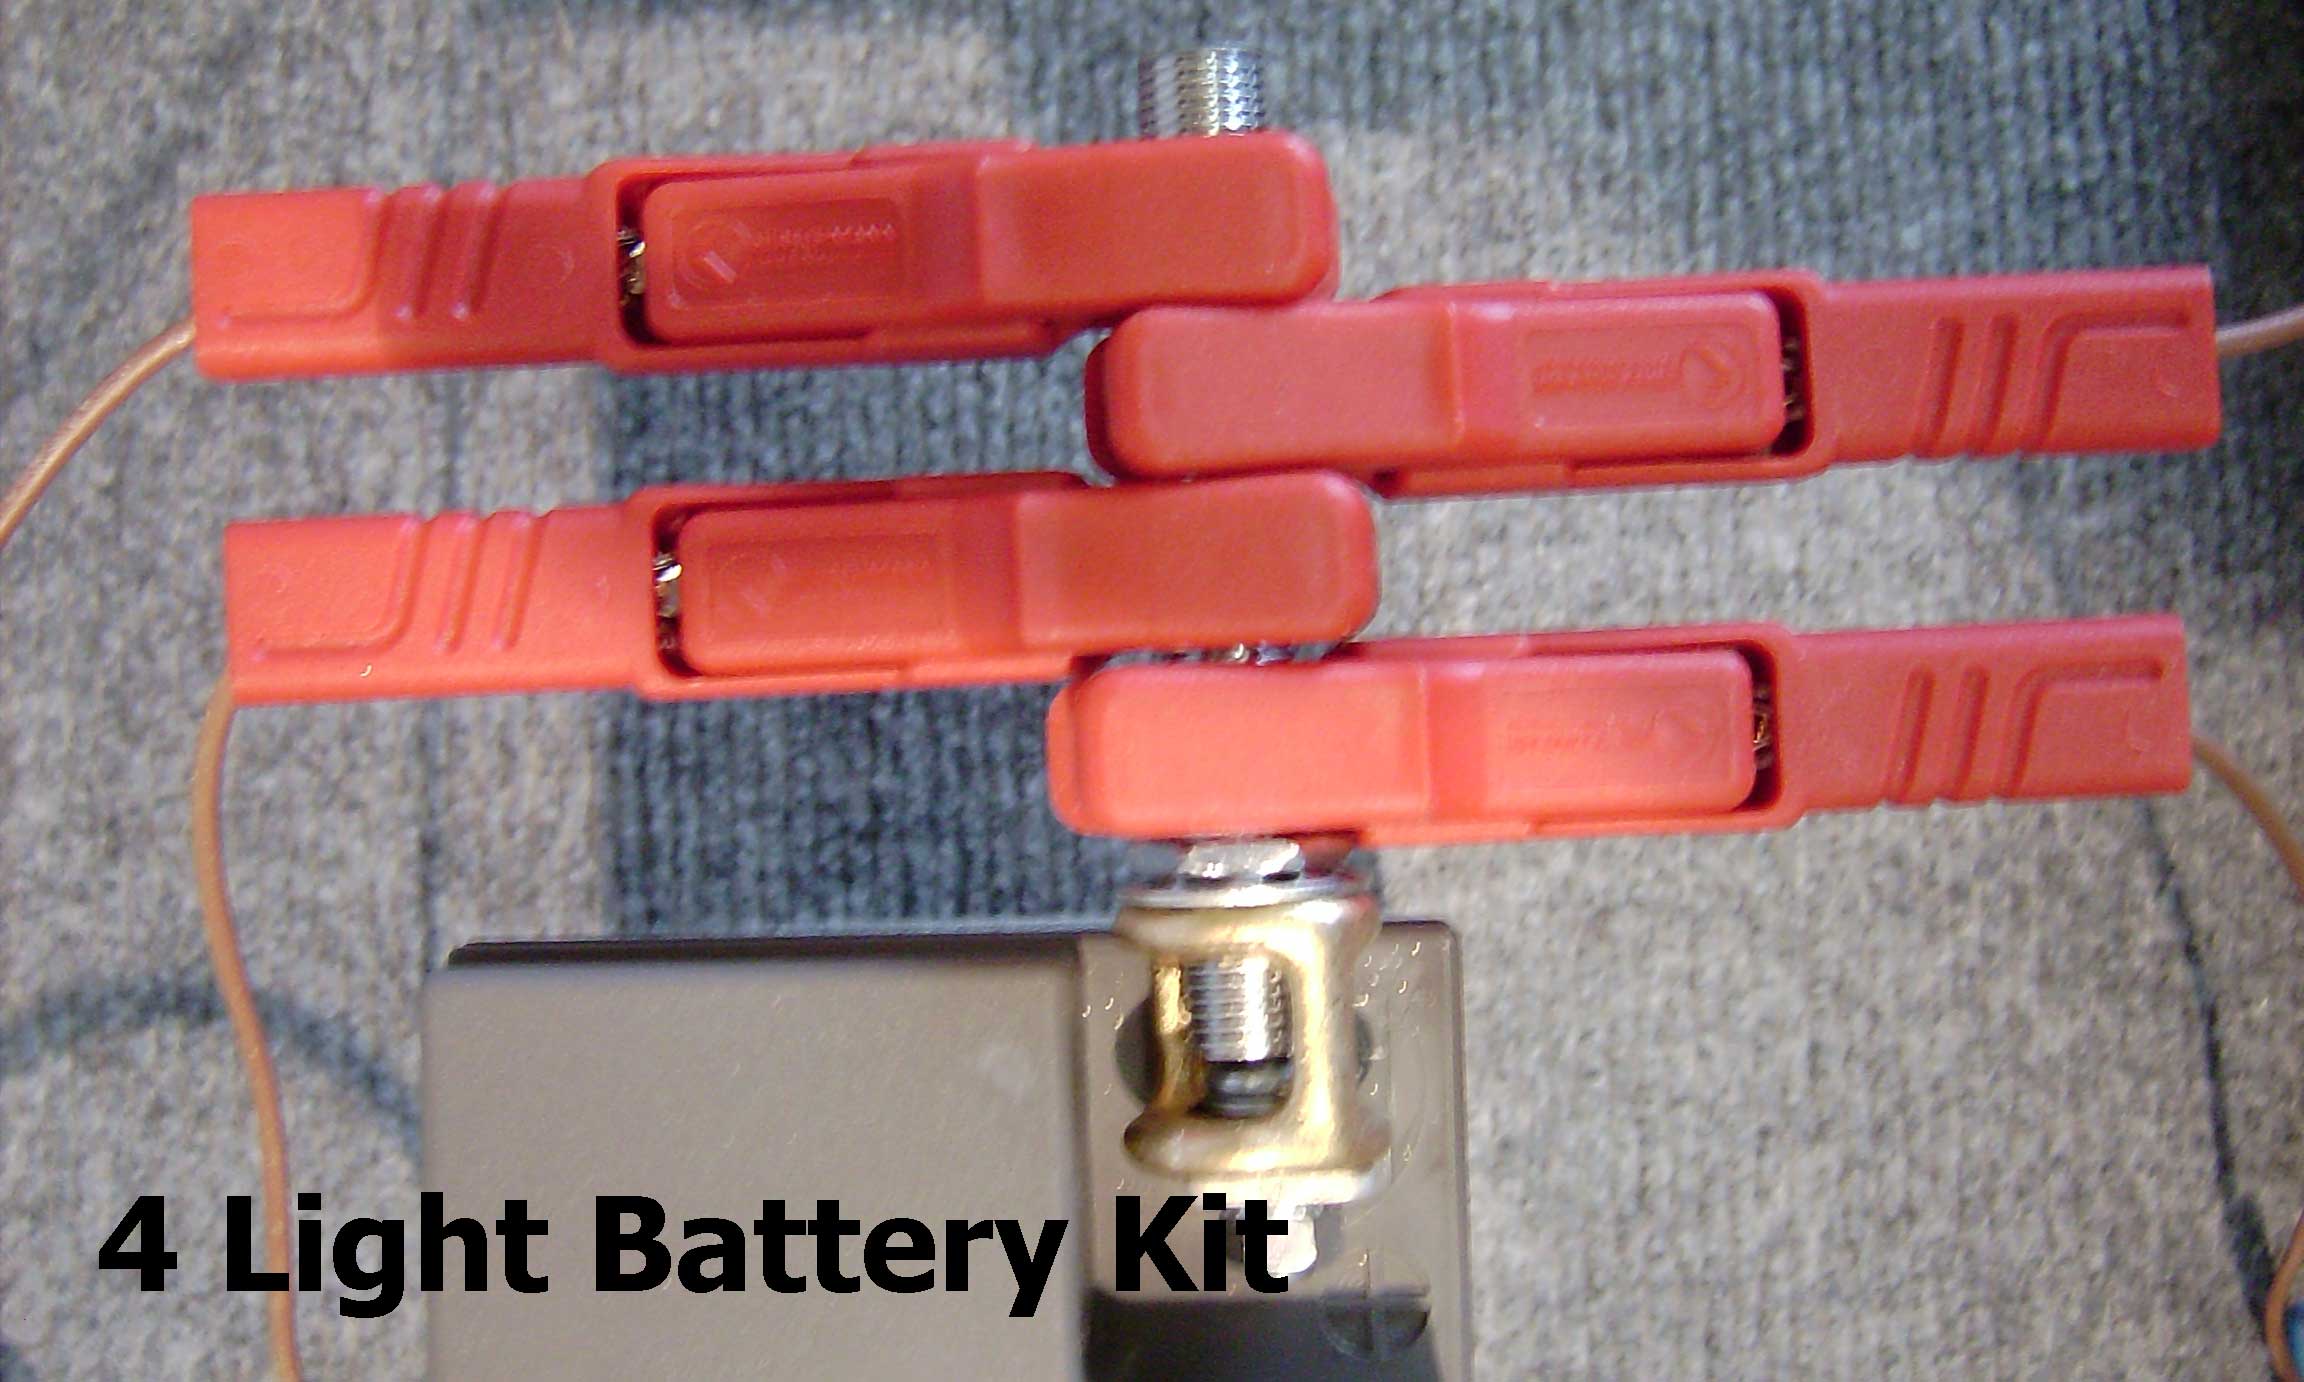 4-Light Battery Kit